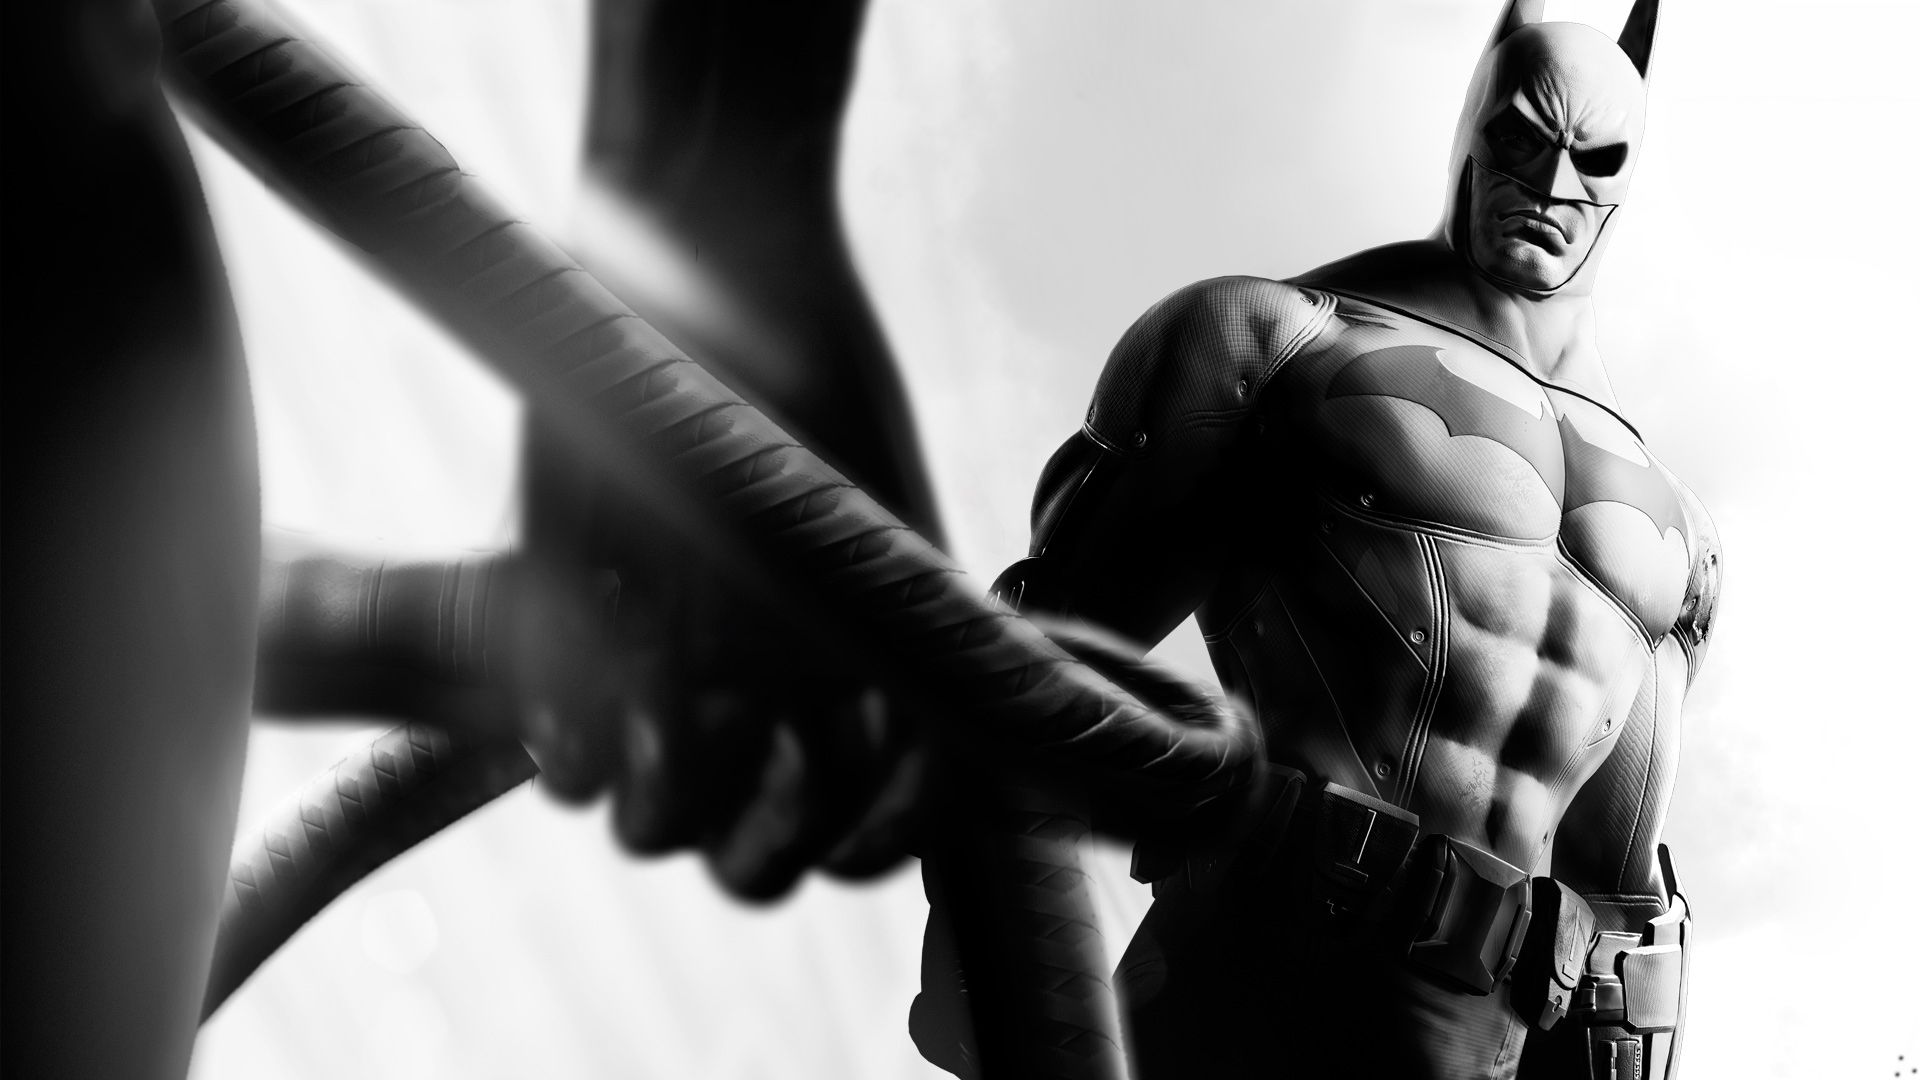 fond d'écran batman arkham city,homme chauve souris,personnage fictif,statue,super héros,noir et blanc